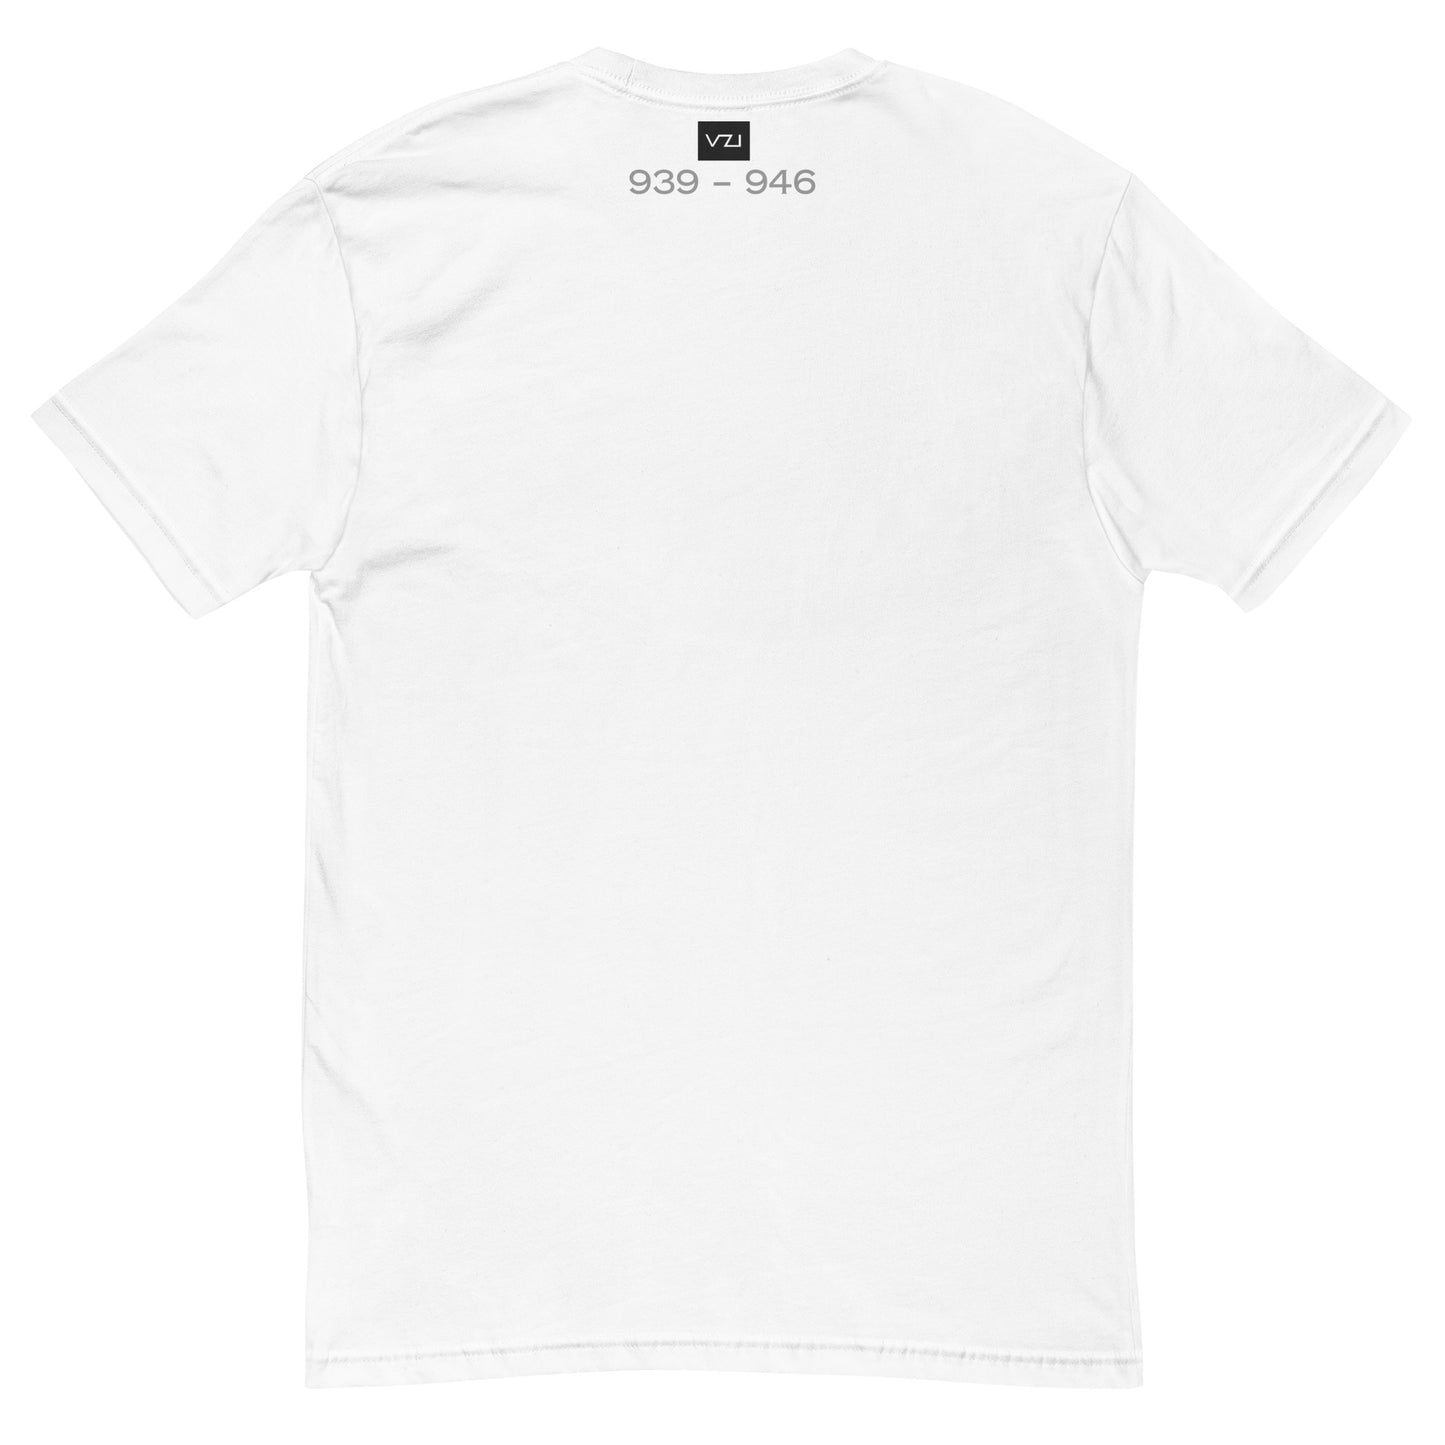 Vazzari Couture: Tailliertes Herren-T-Shirt: Edmund (939 – 946) Smart Casual, bequeme Passform, weich